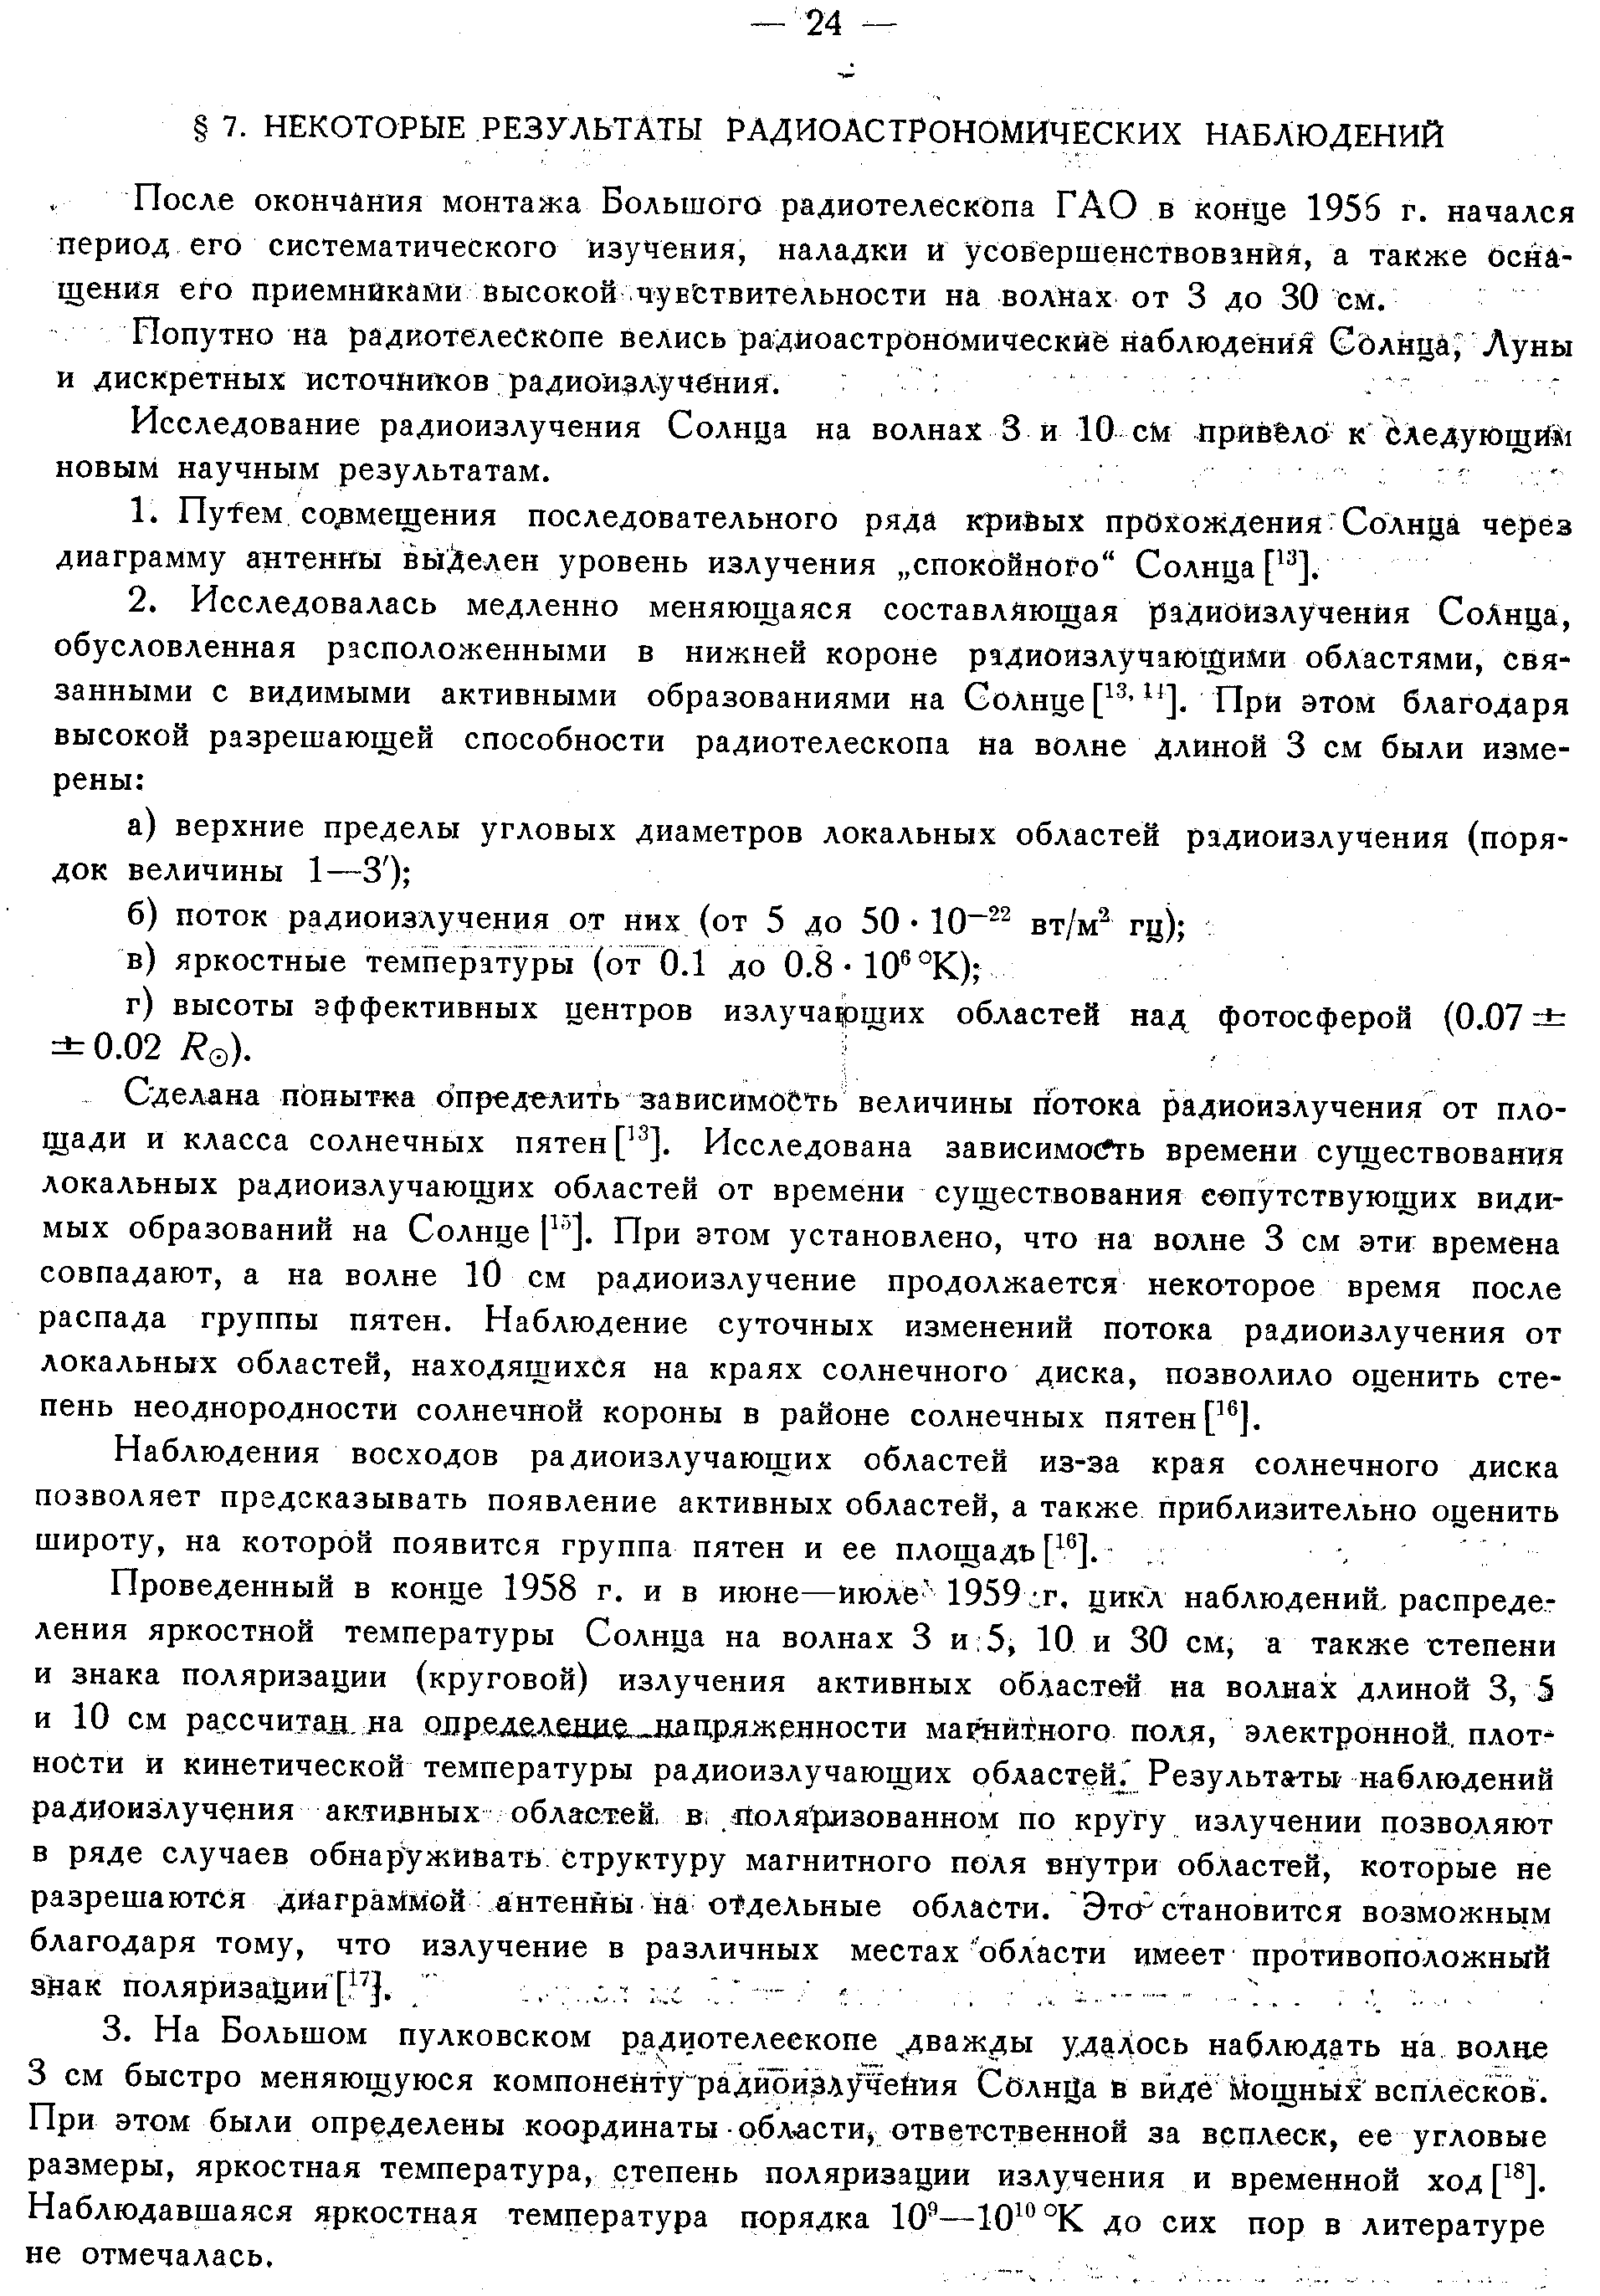 Хайкин С.Э. и др.,стр.21